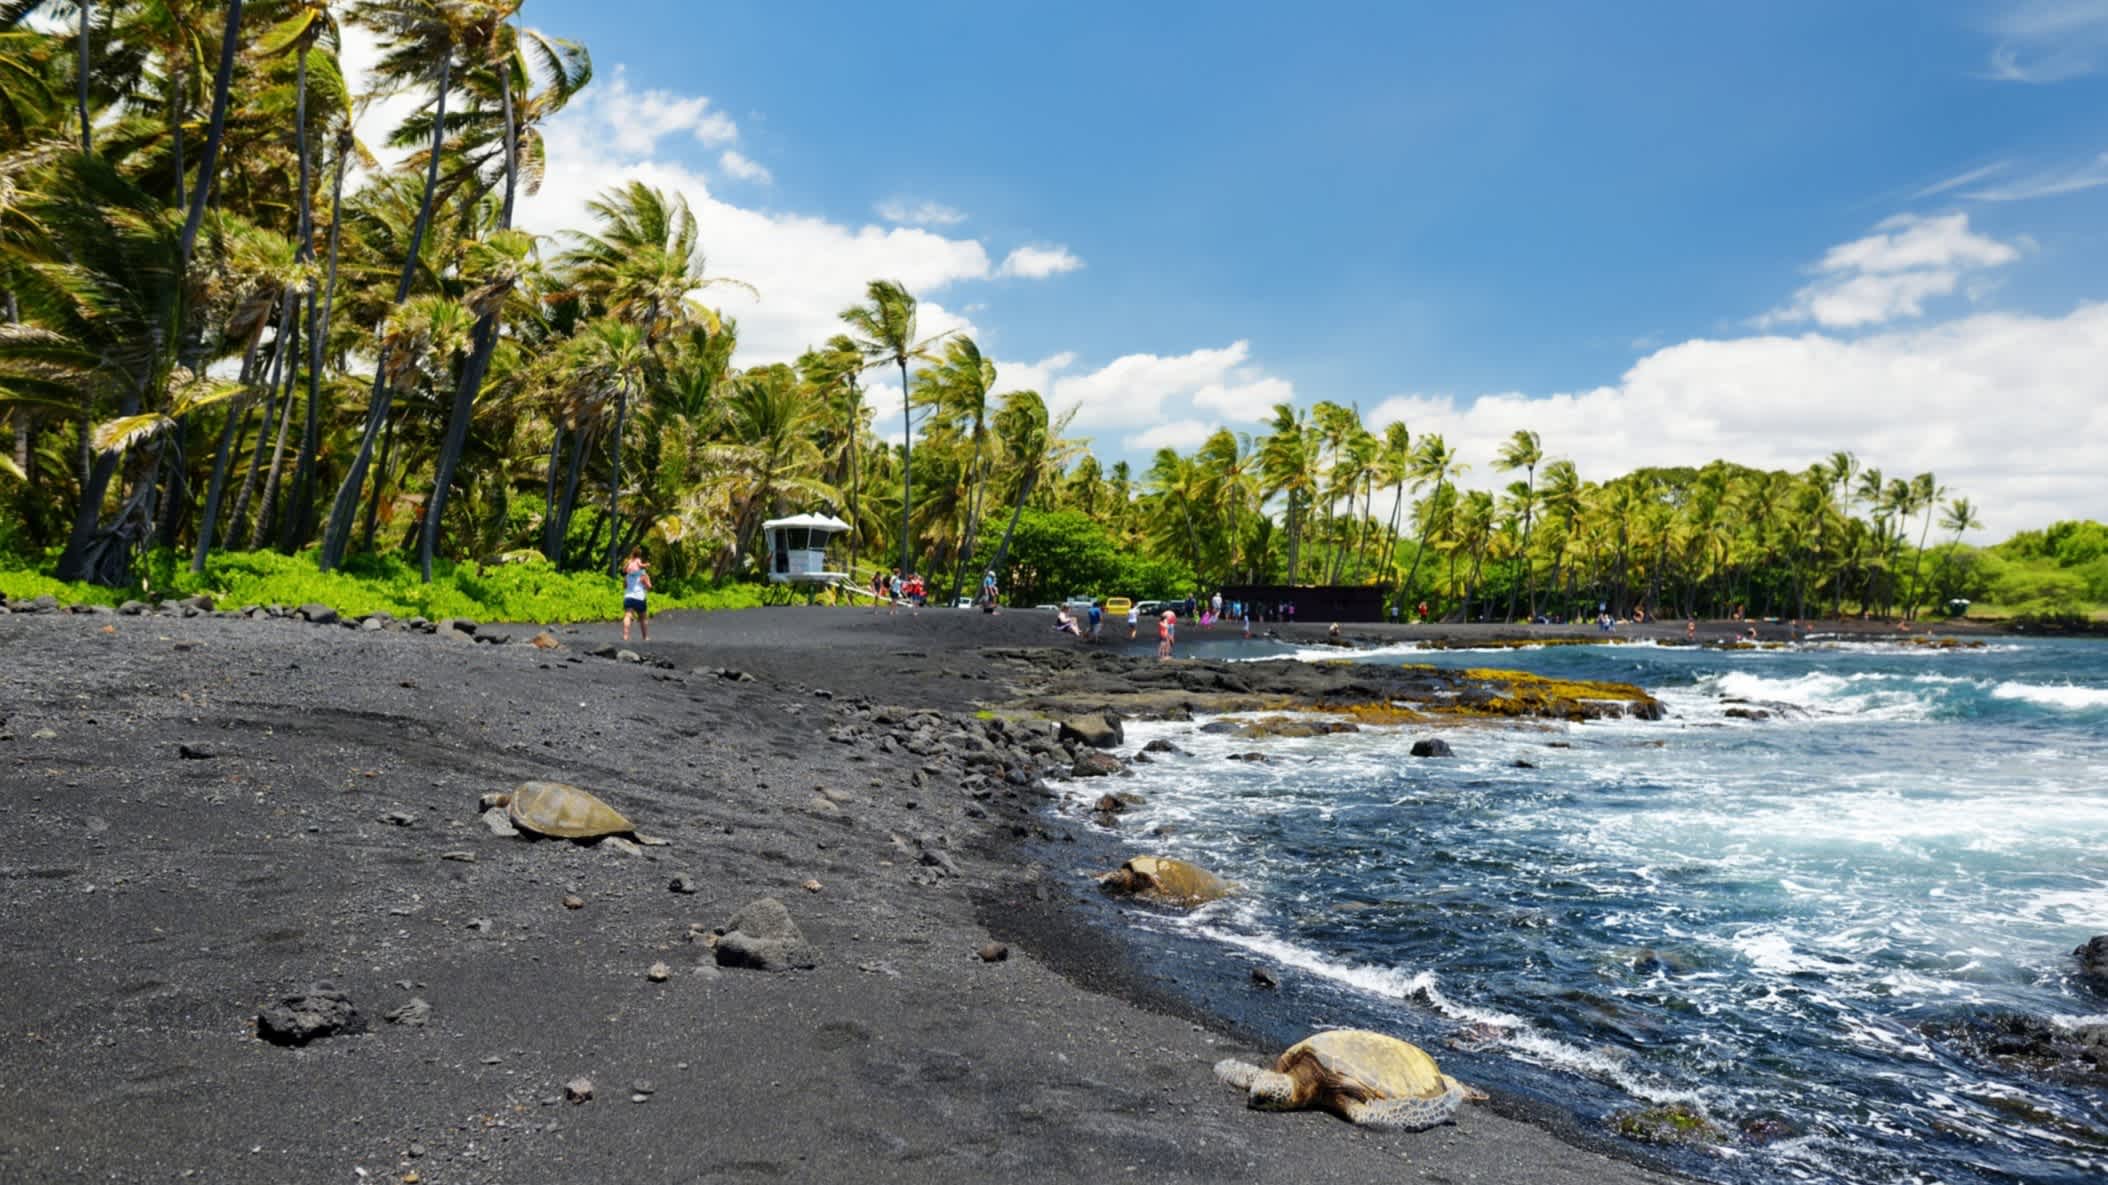 Der schwarze Sandstrand von Punaluu-Strand, Big Island, Hawaii, USA bei Sonnenschein und mit Blick auf das Meer sowie die Palmen am Rand des Strandes.